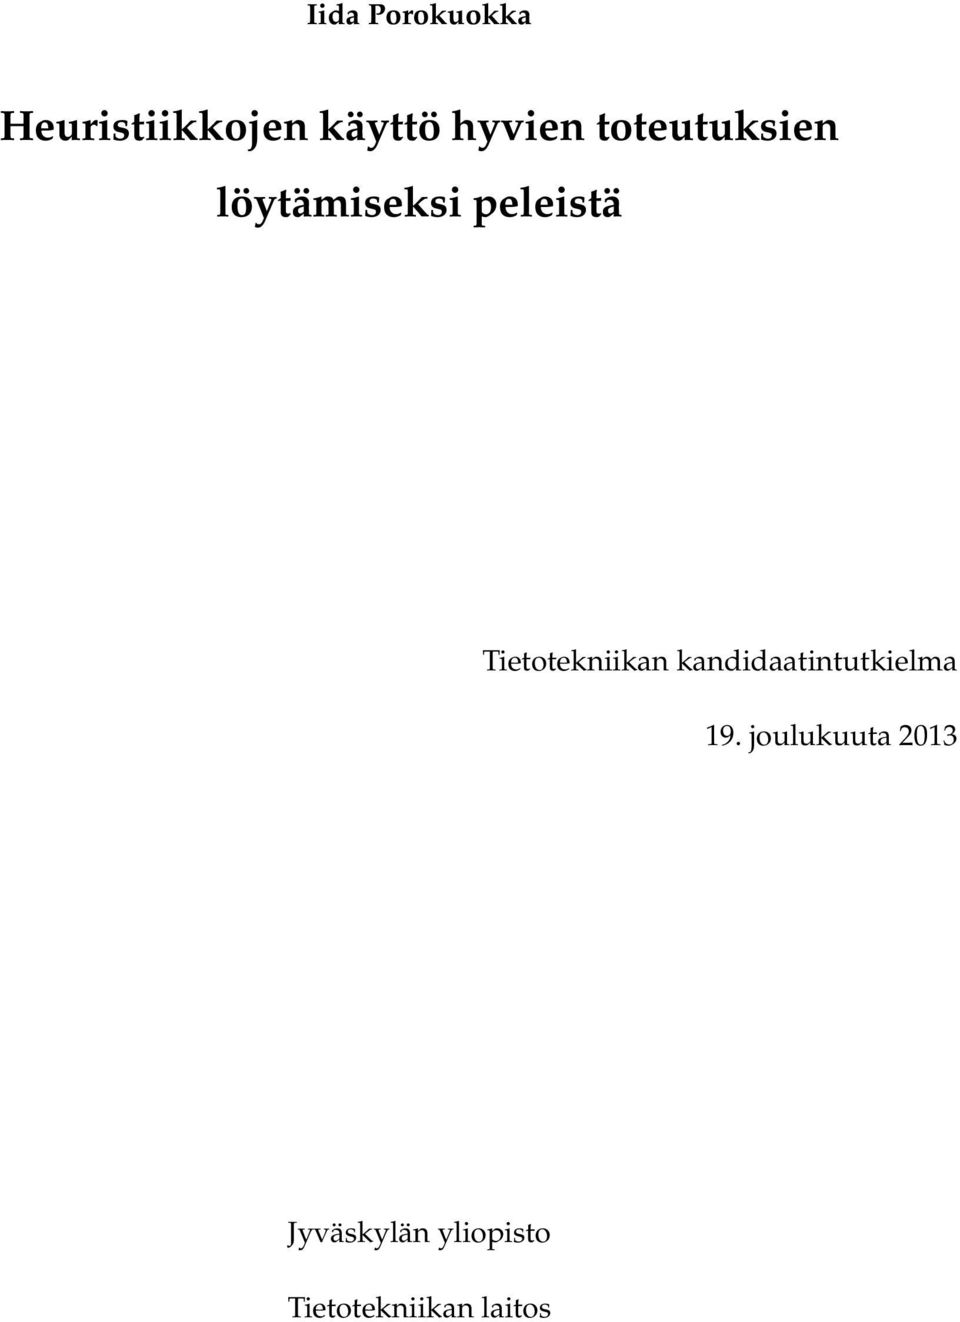 Tietotekniikan kandidaatintutkielma 19.